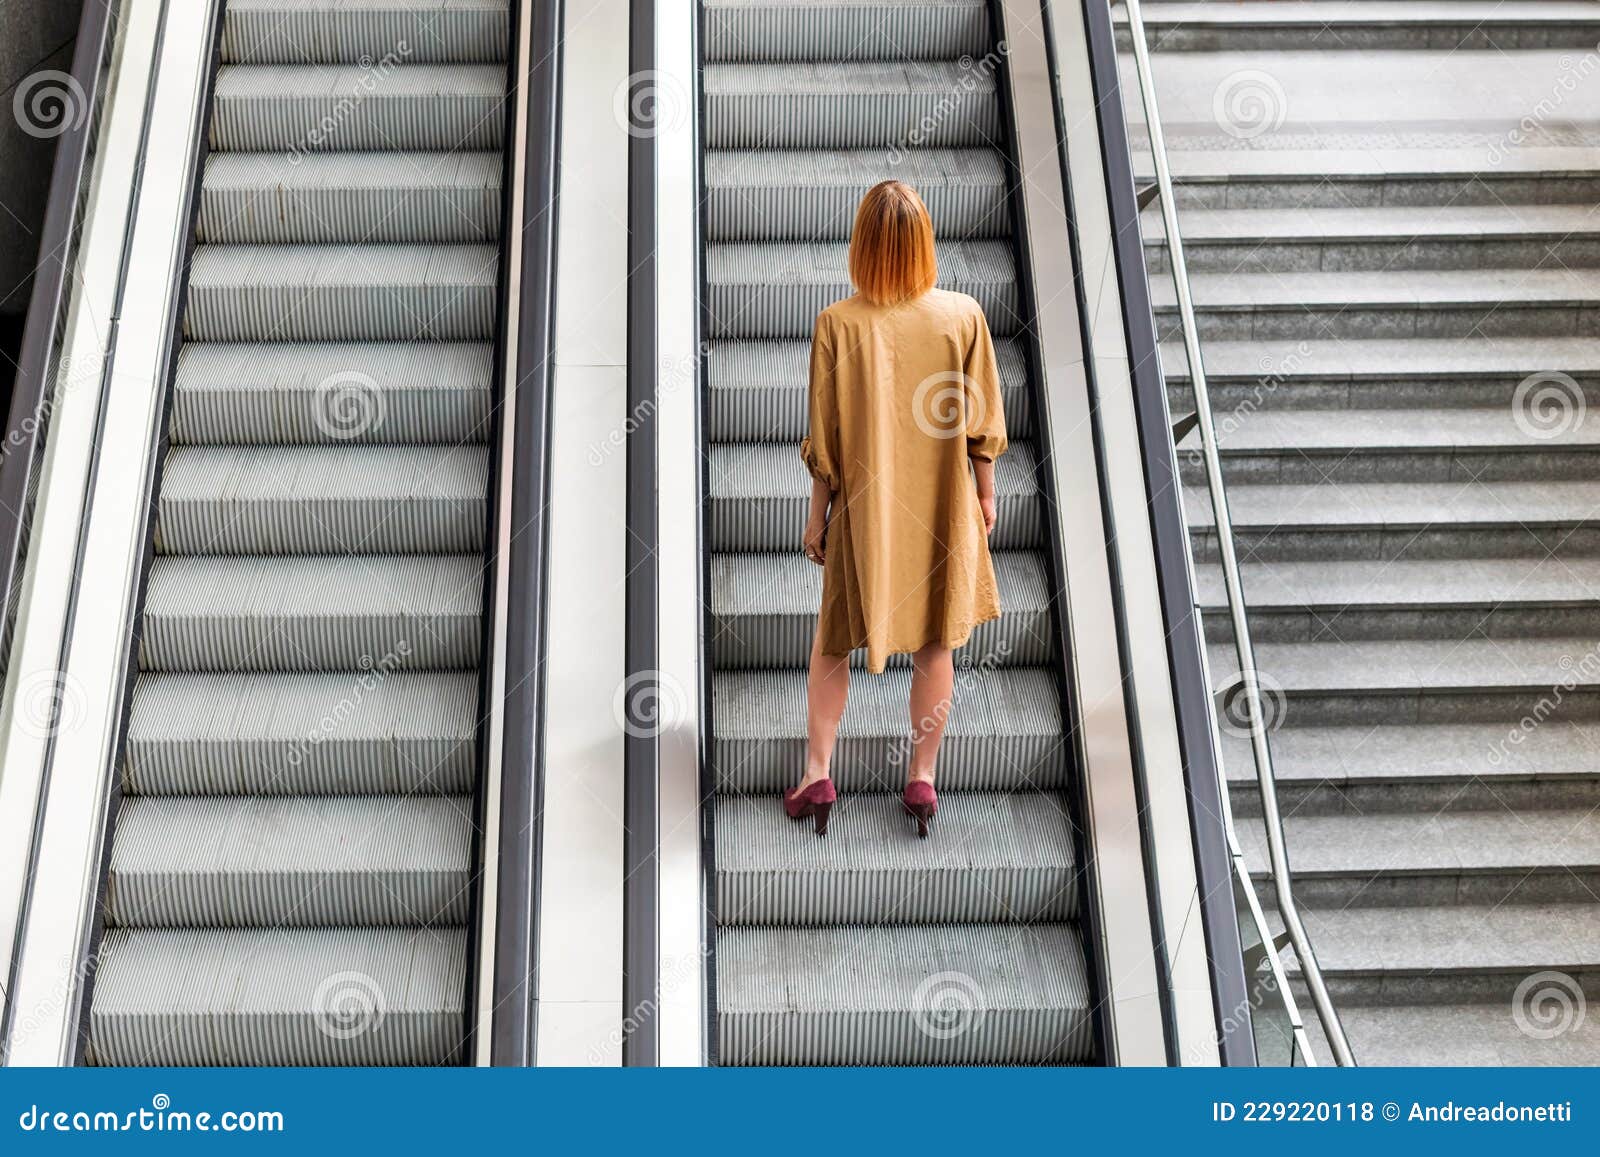 电梯上的短裙厚肤色裤袜美女_中国街拍-真实街拍第一站